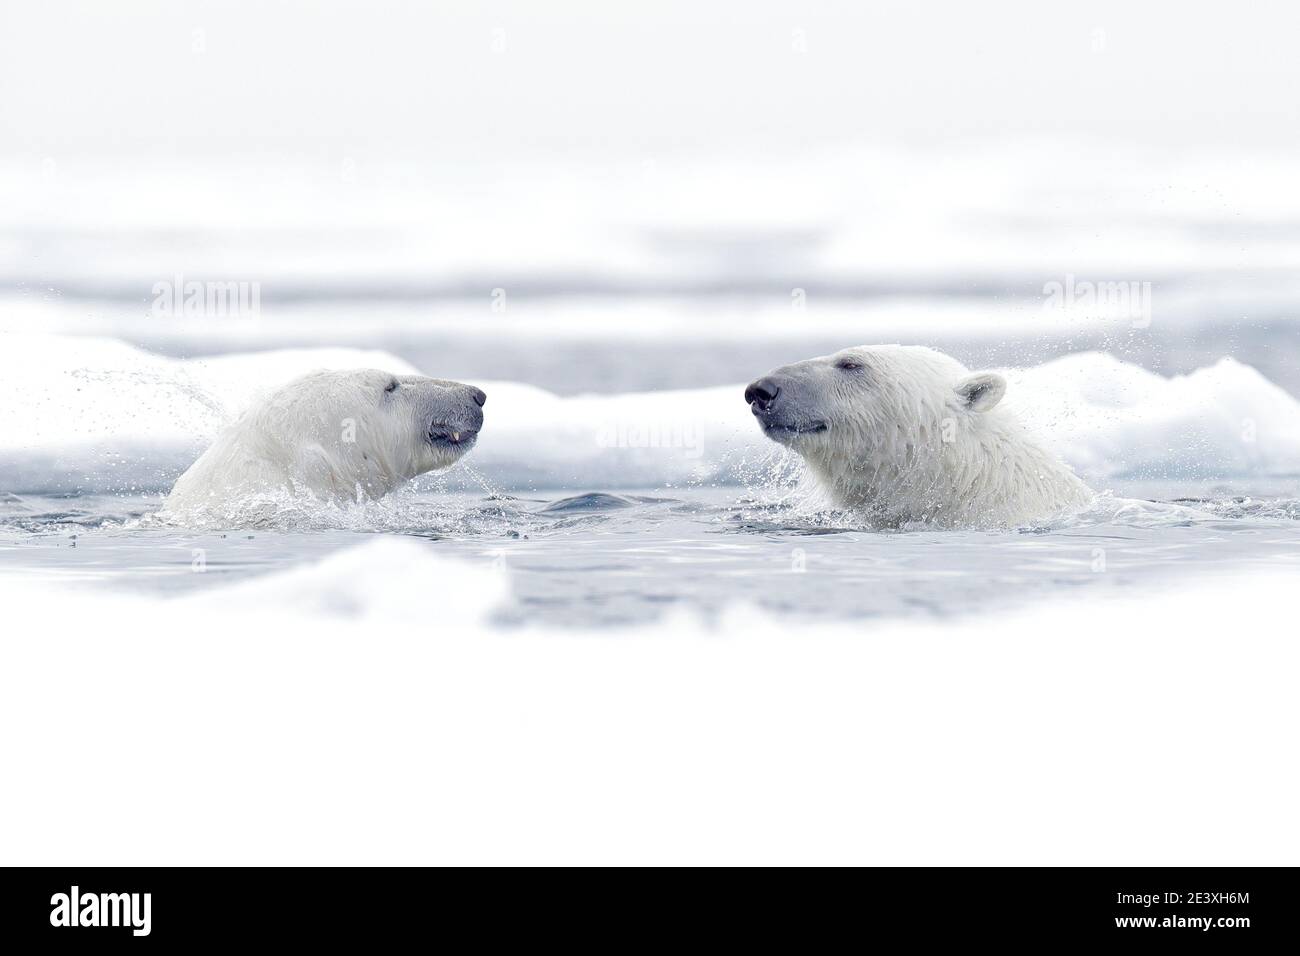 Eisbär tanzt auf dem Eis. Zwei Eisbären lieben auf treibendem Eis mit Schnee, weiße Tiere in der Natur Lebensraum, Svalbard, Norwegen. Spielende Tiere Stockfoto